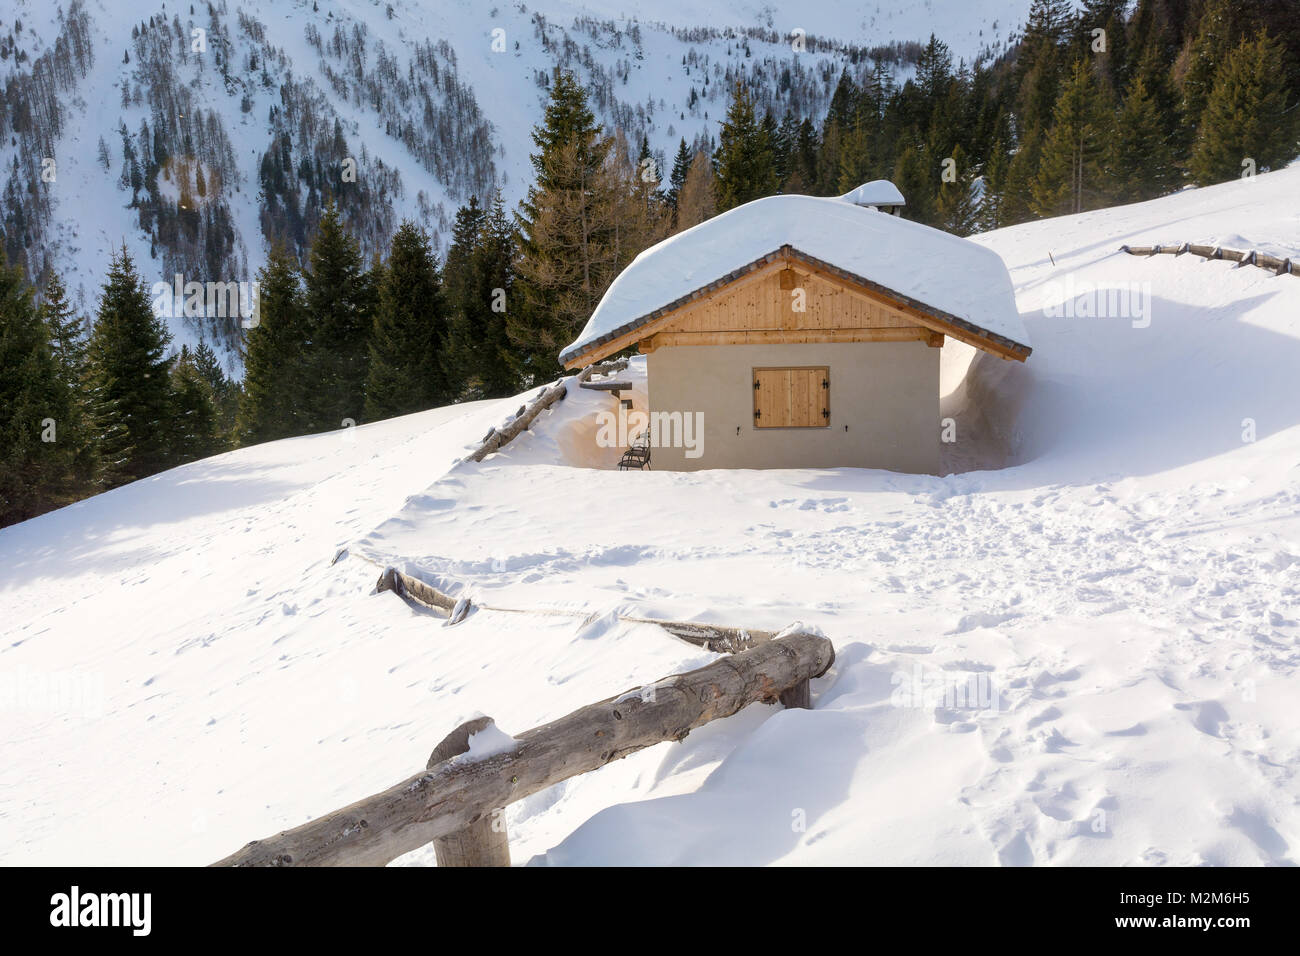 Vista panoramica di idilliaci winter wonderland con cime e tradizionali chalet di montagna nelle Dolomiti nella luce del tramonto Foto Stock